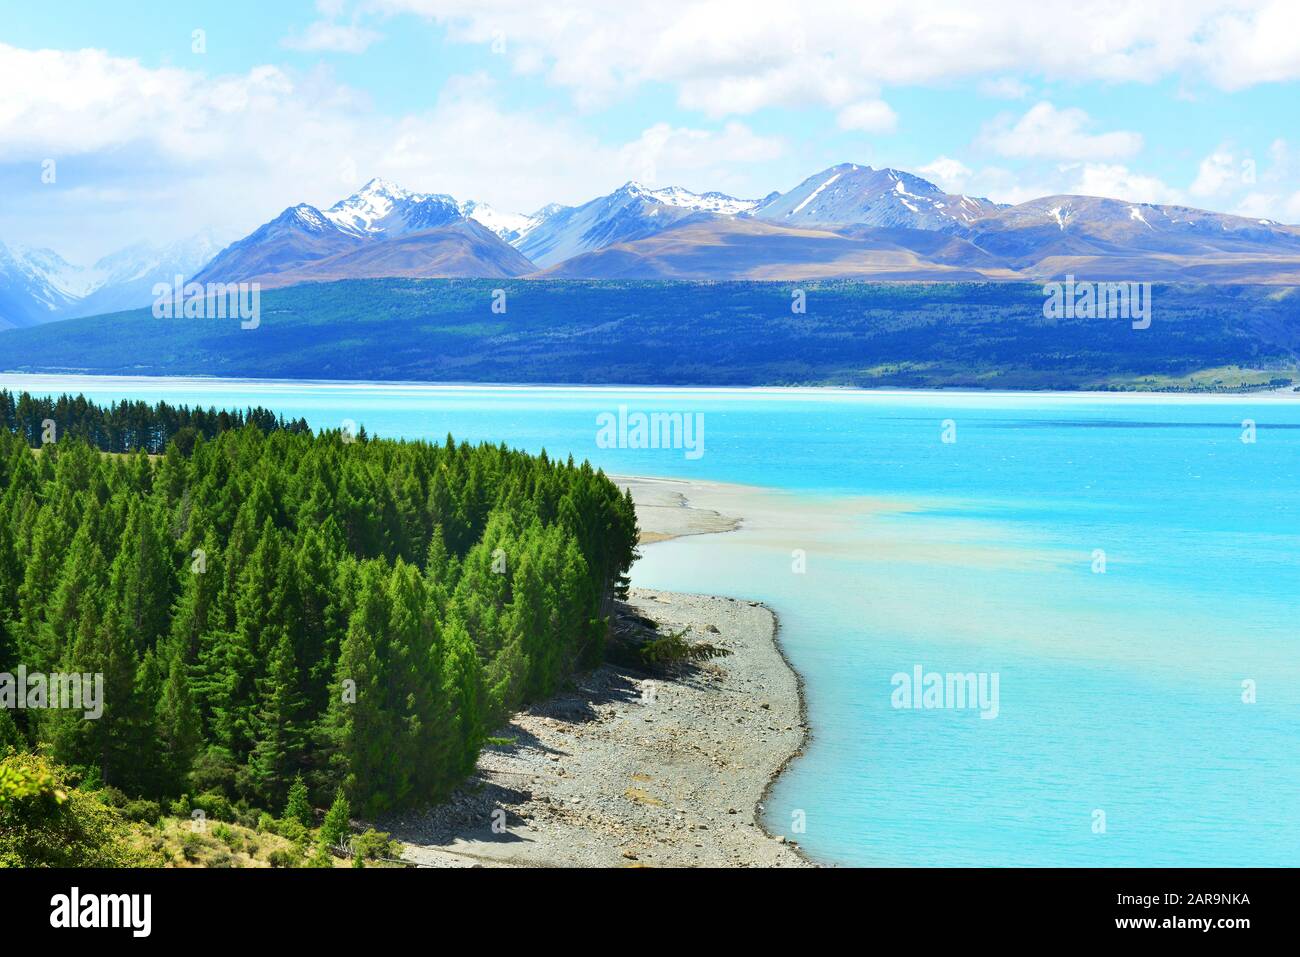 Le lac Pukaki et le Mont Cook, Nouvelle-Zélande Banque D'Images